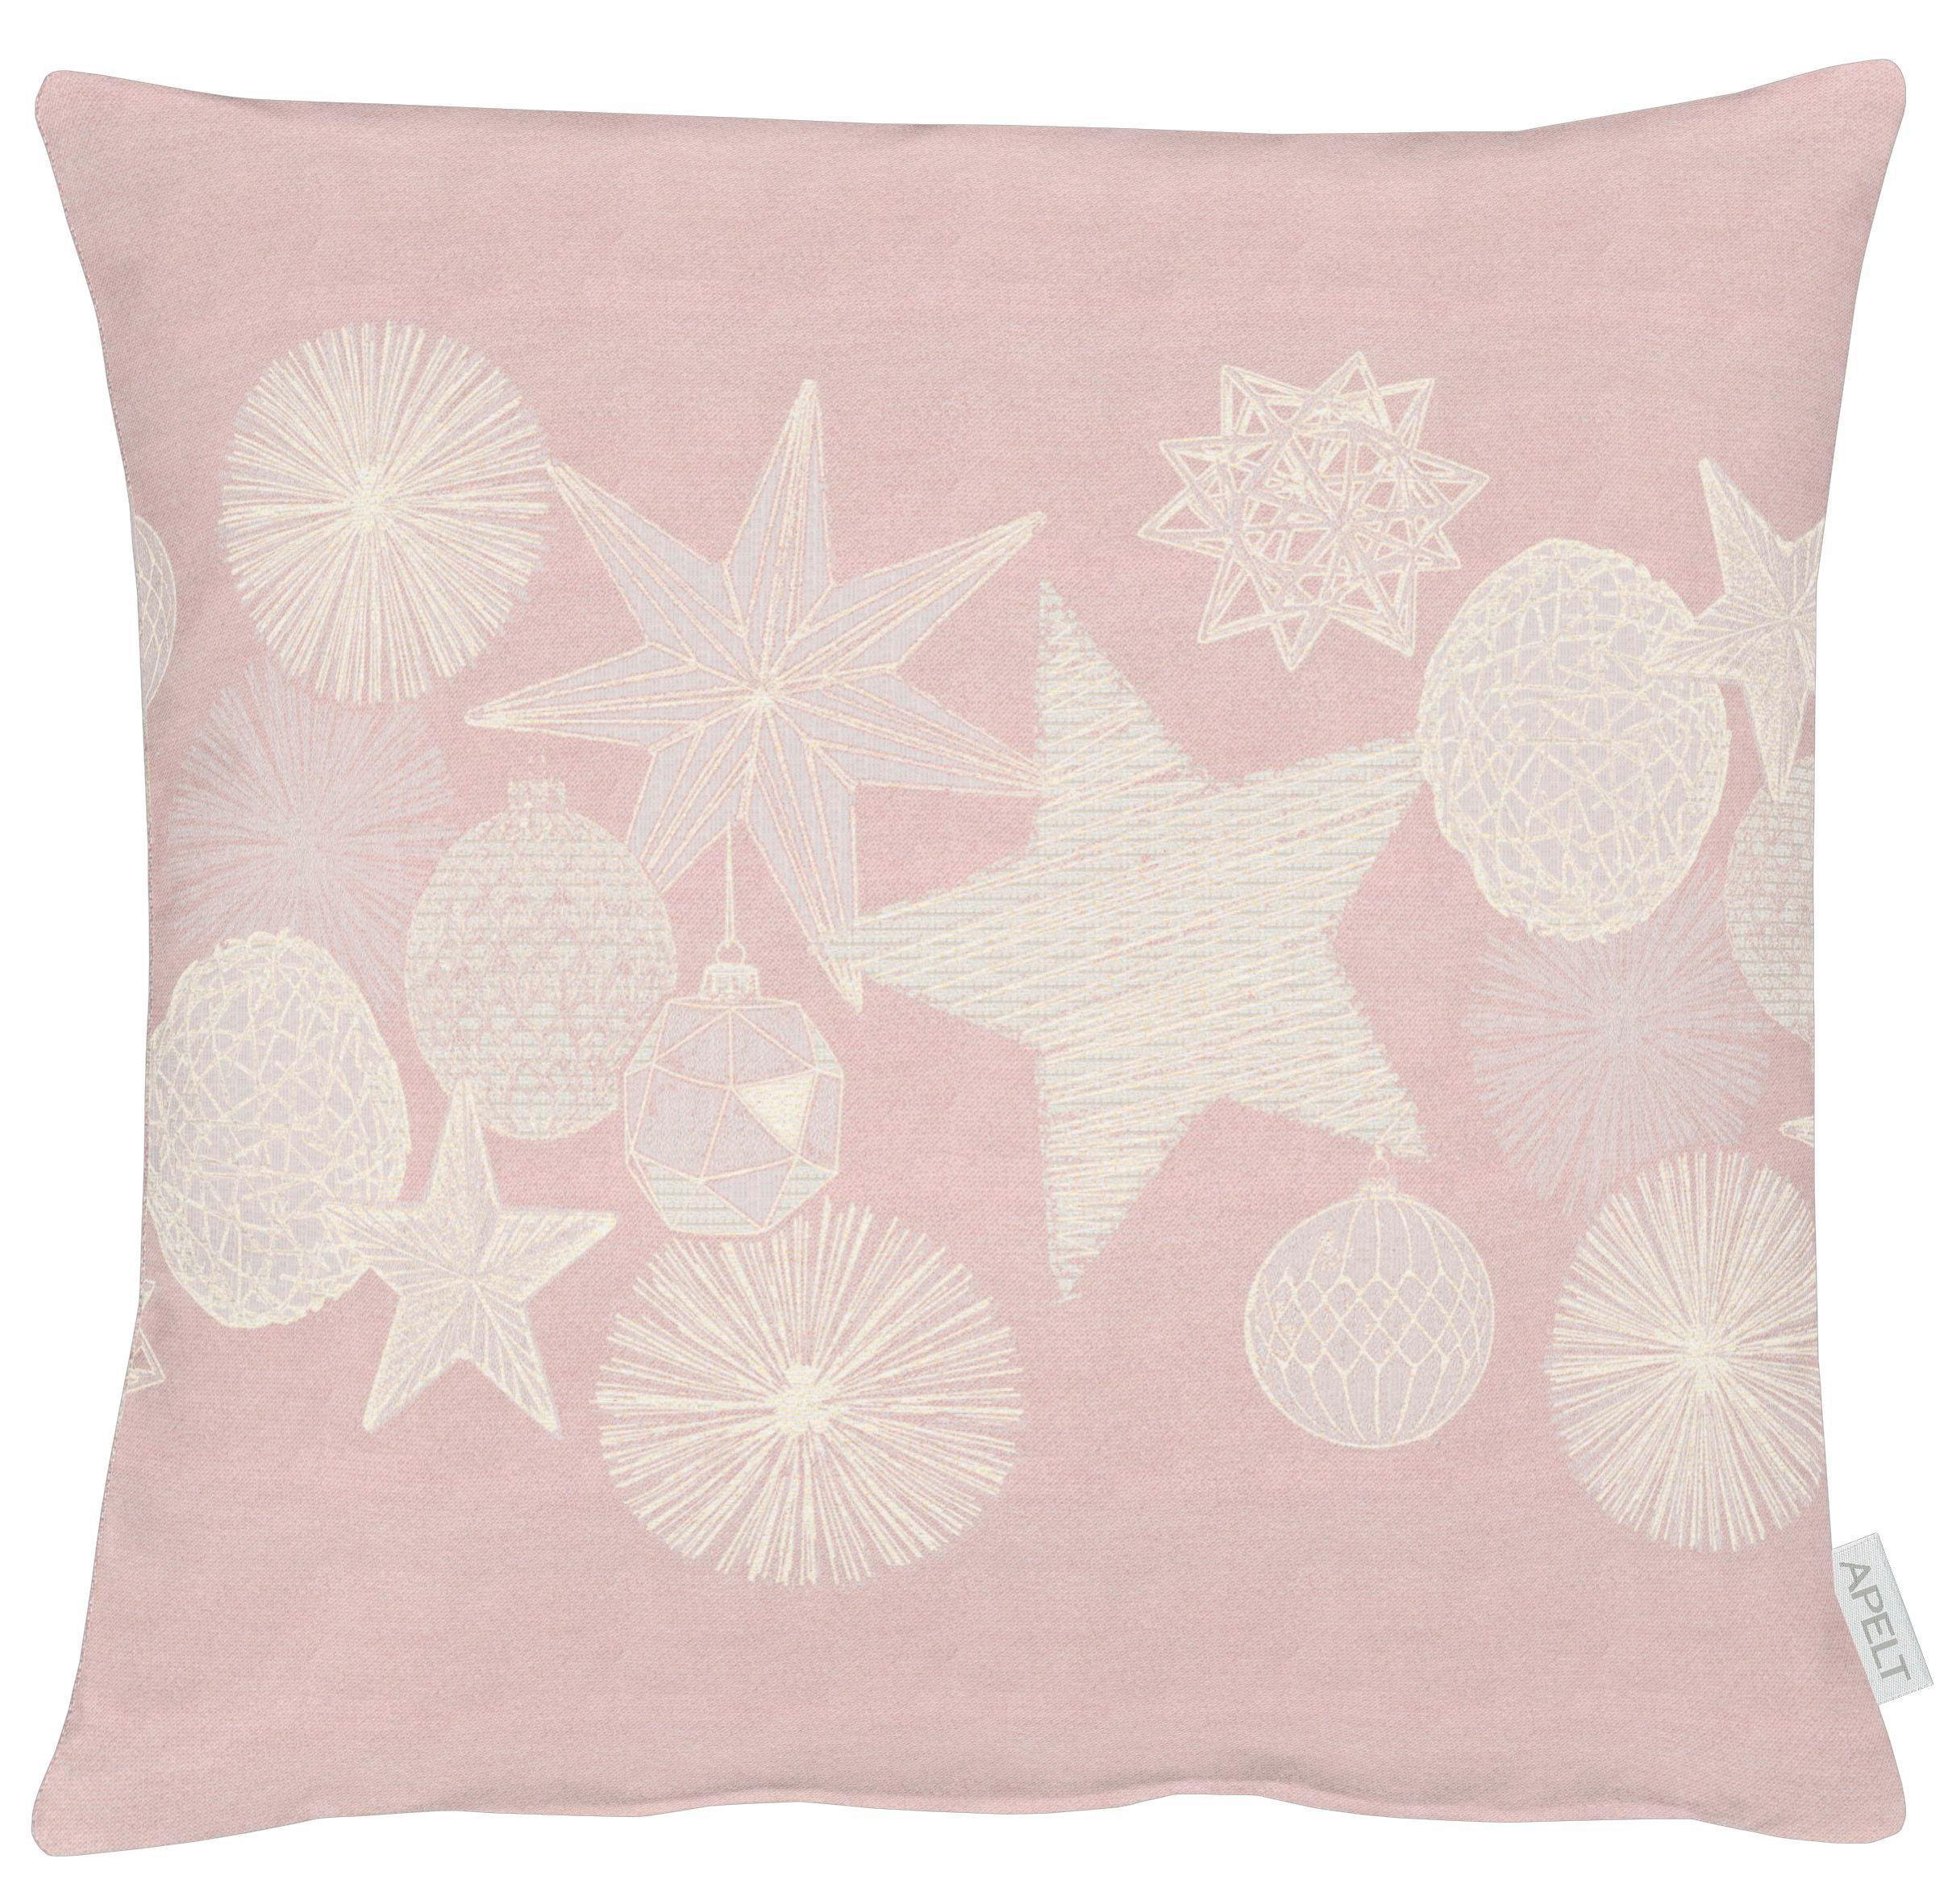 KISSENHÜLLE Christmas Glam  - Rosa, Basics, Textil (49x49cm) - X-Mas